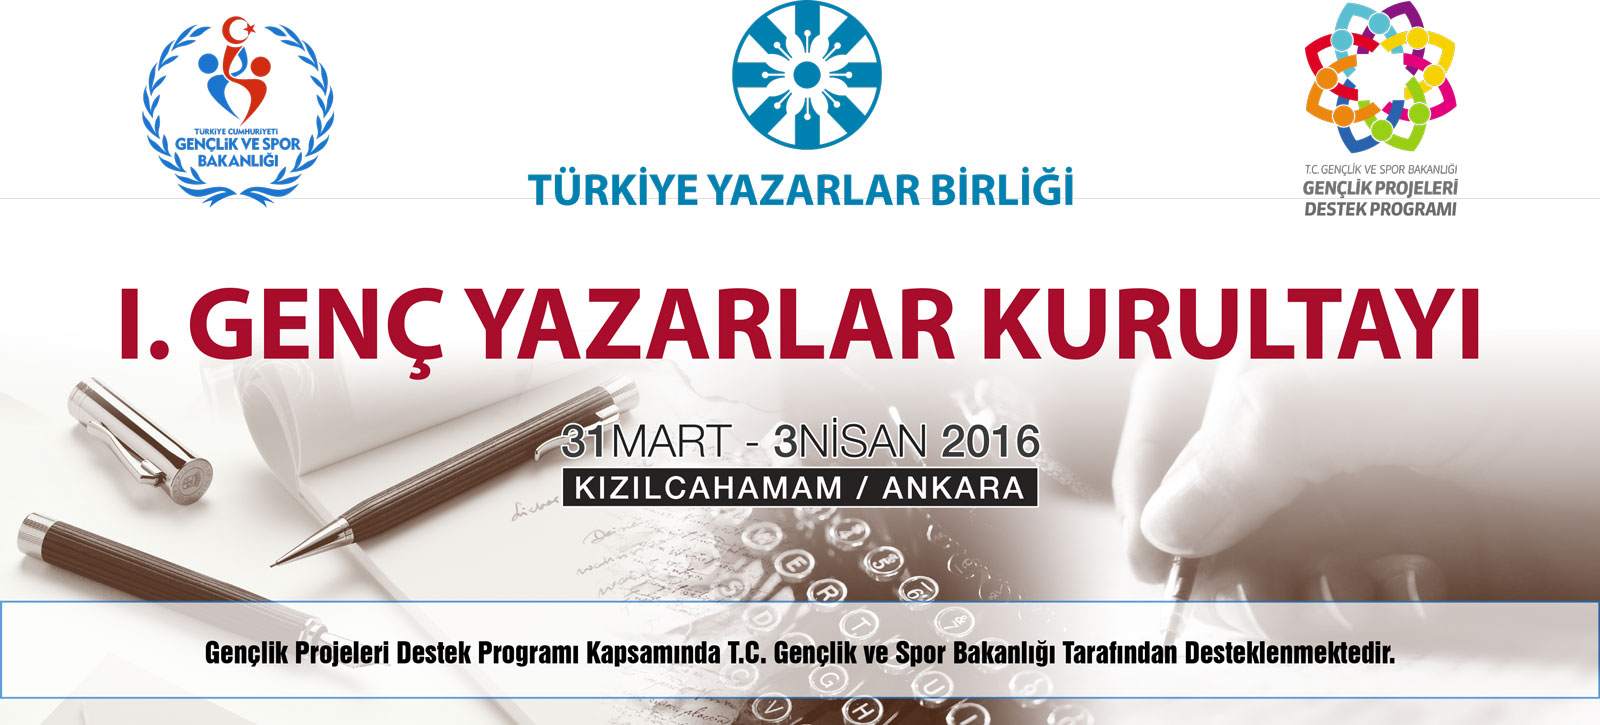 Türkiye'nin İlk Genç Yazarlar Kurultayı